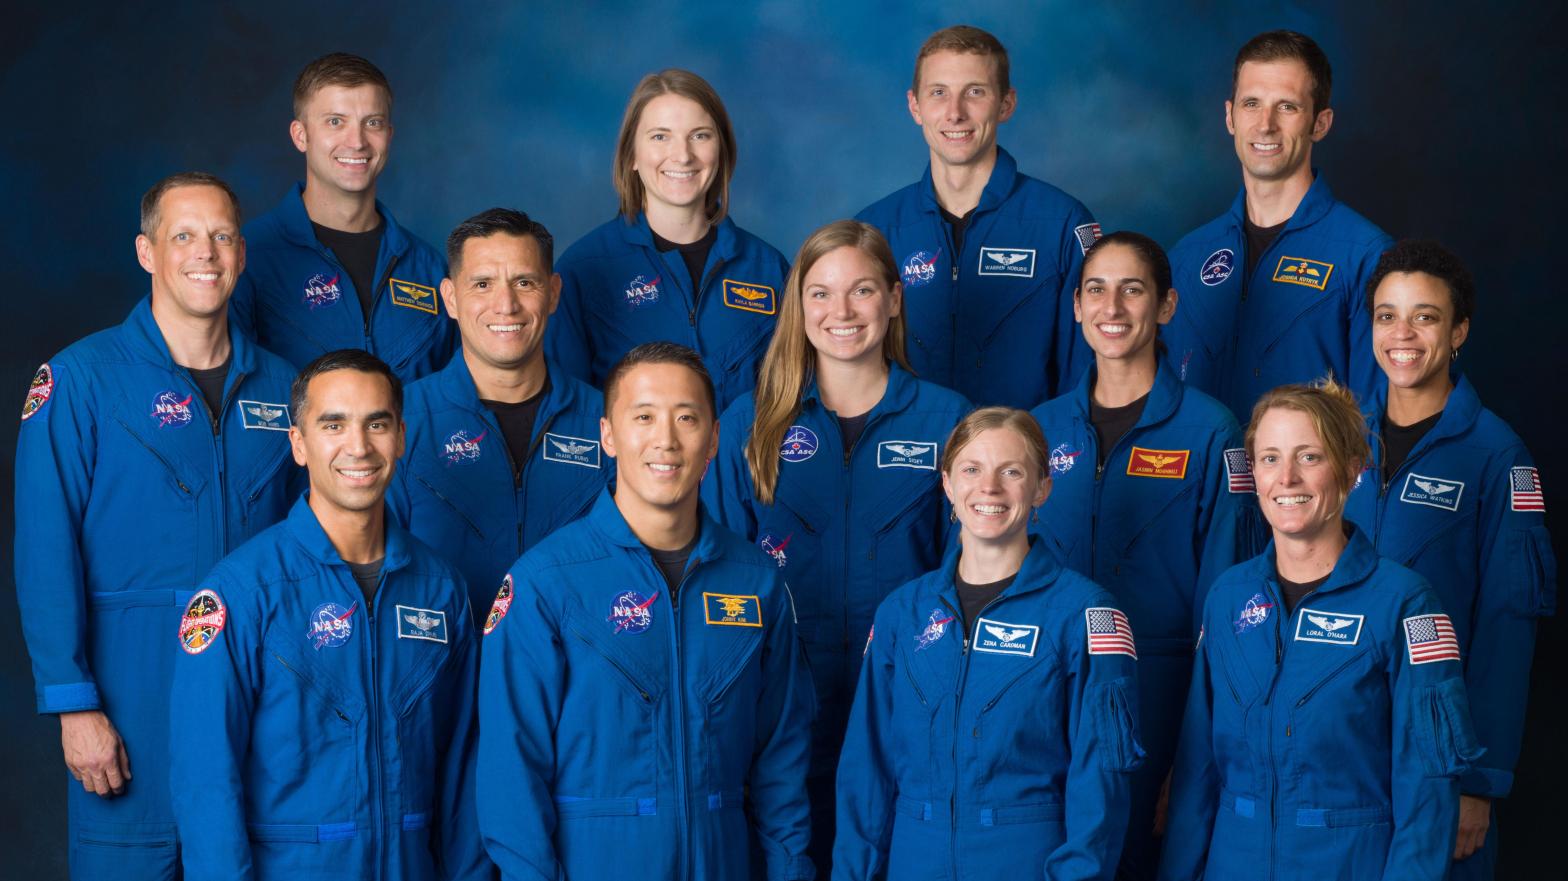 NASA's new class of astronauts graduated in January 2020. (Photo: NASA)